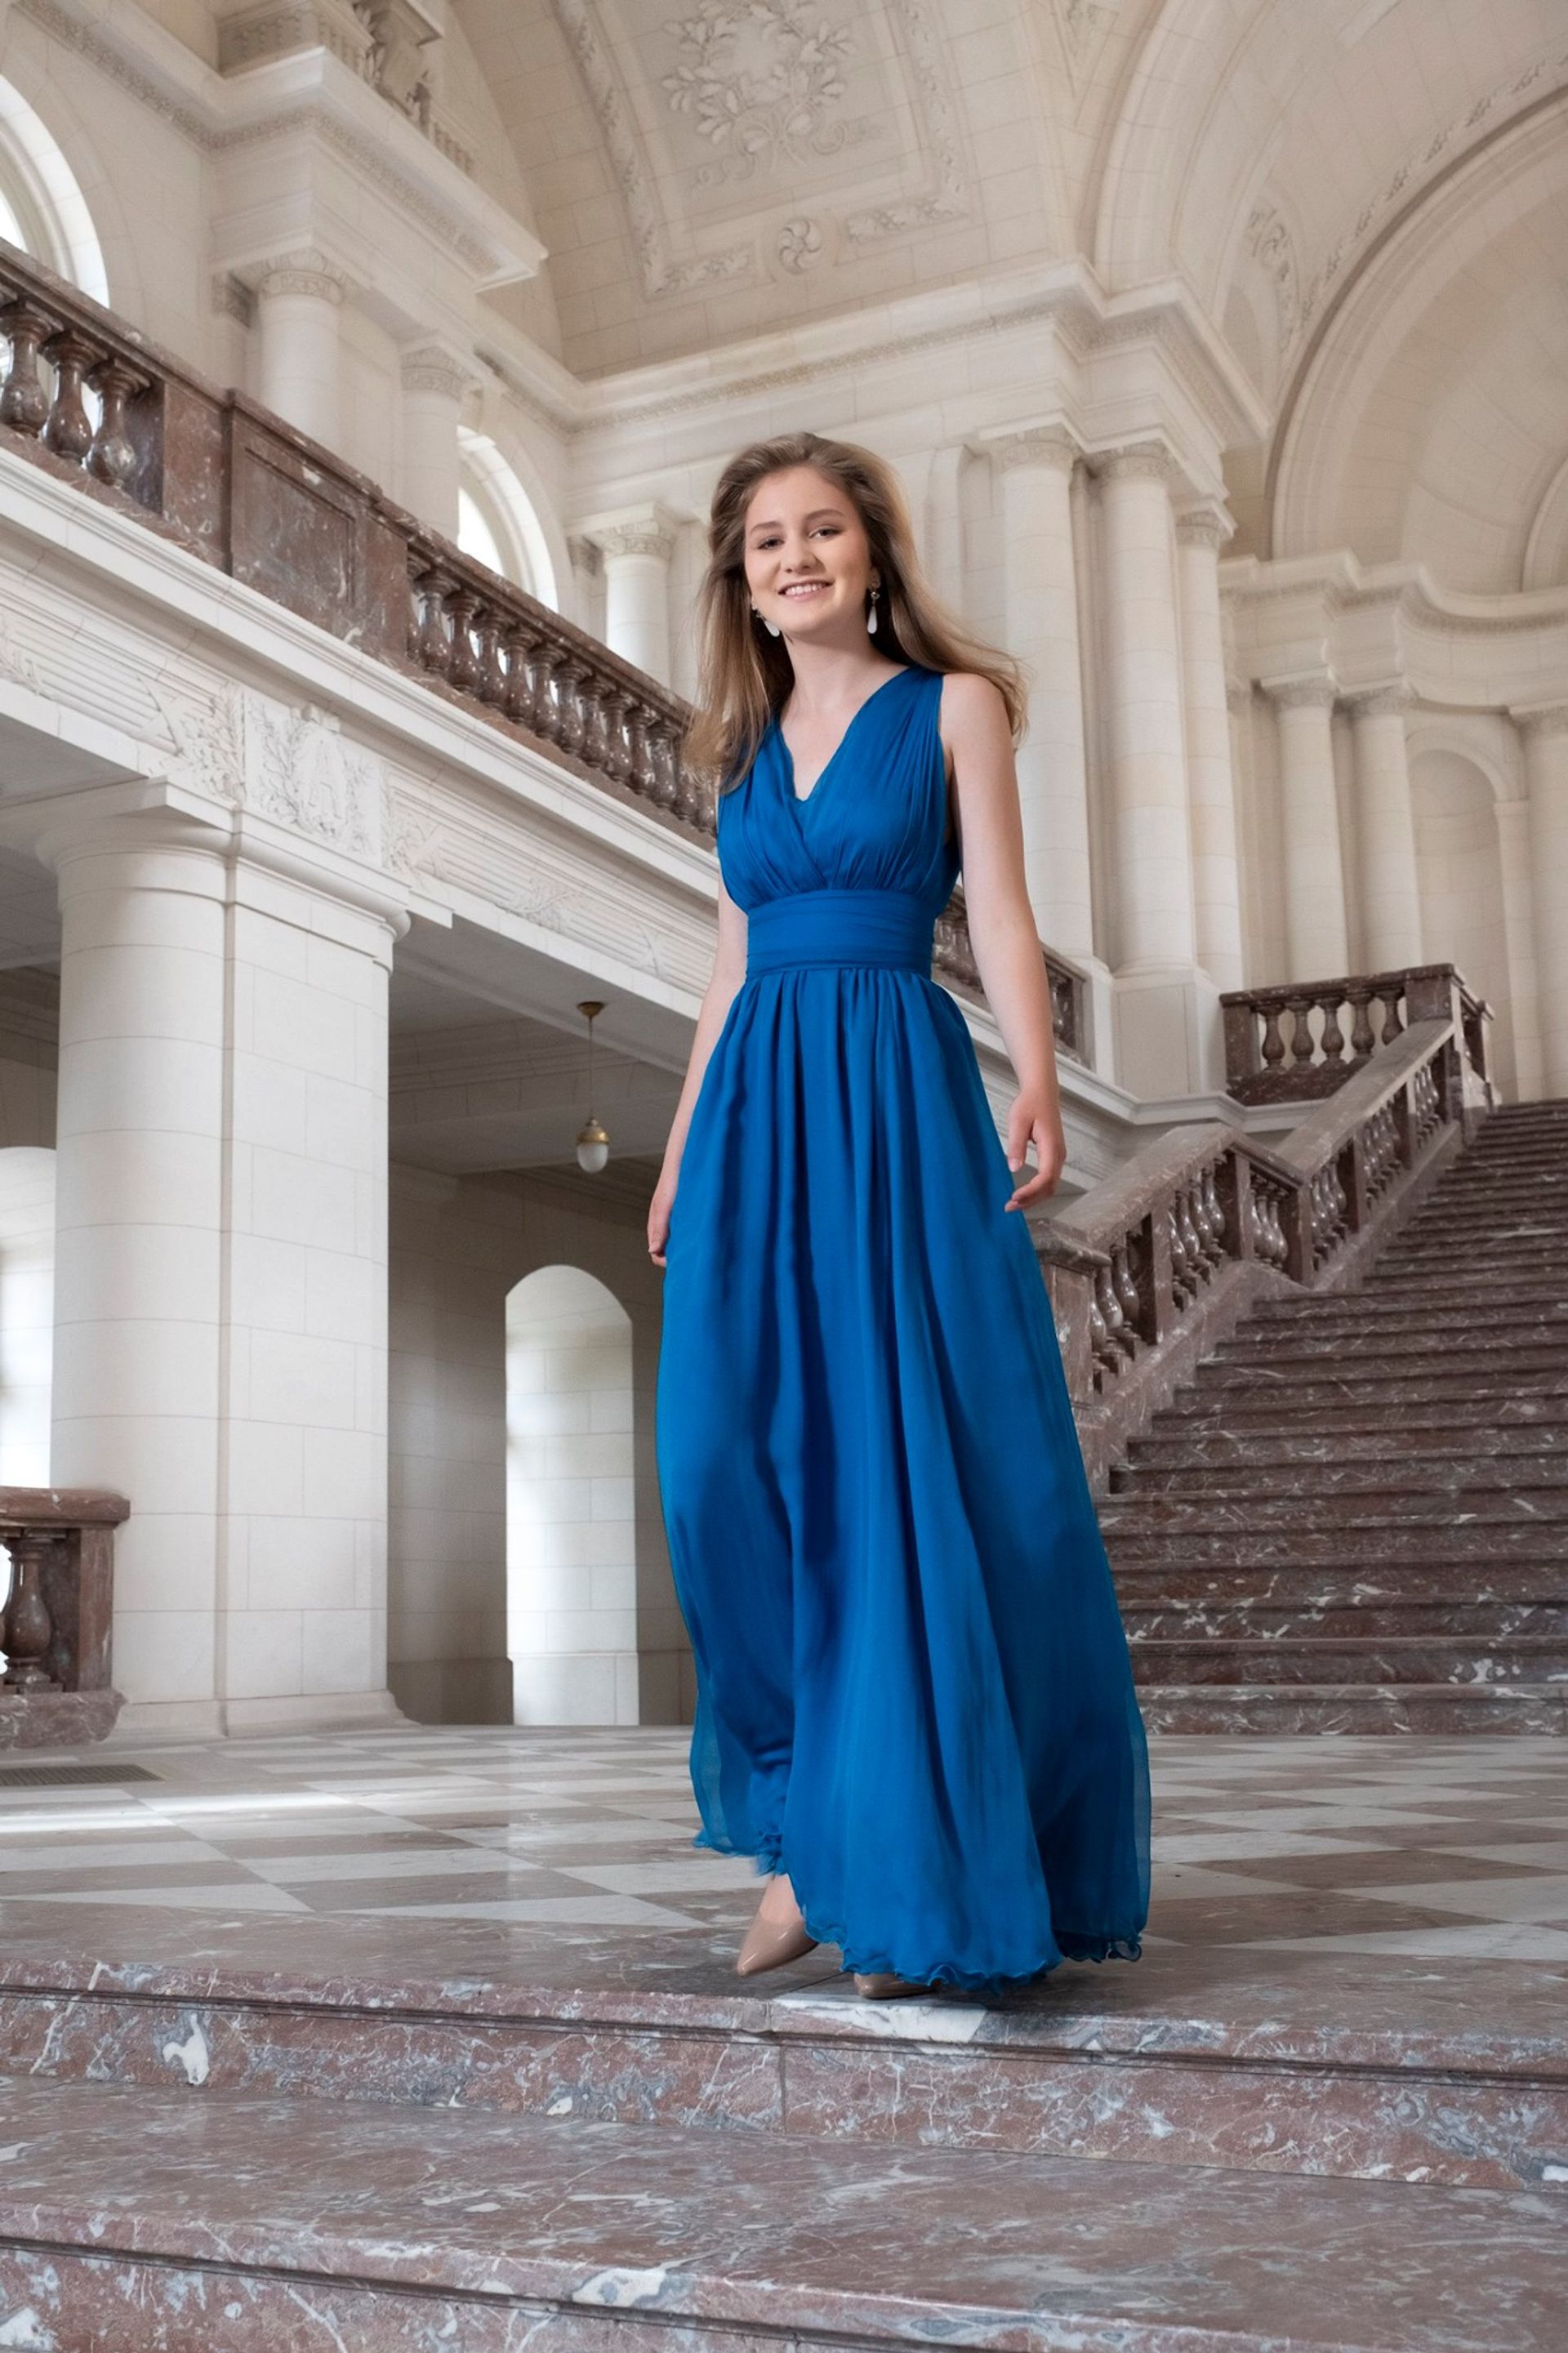 Vorig jaar deelde het Belgische koningshuis deze prachtige foto van Elisabeth in een blauwe jurk,